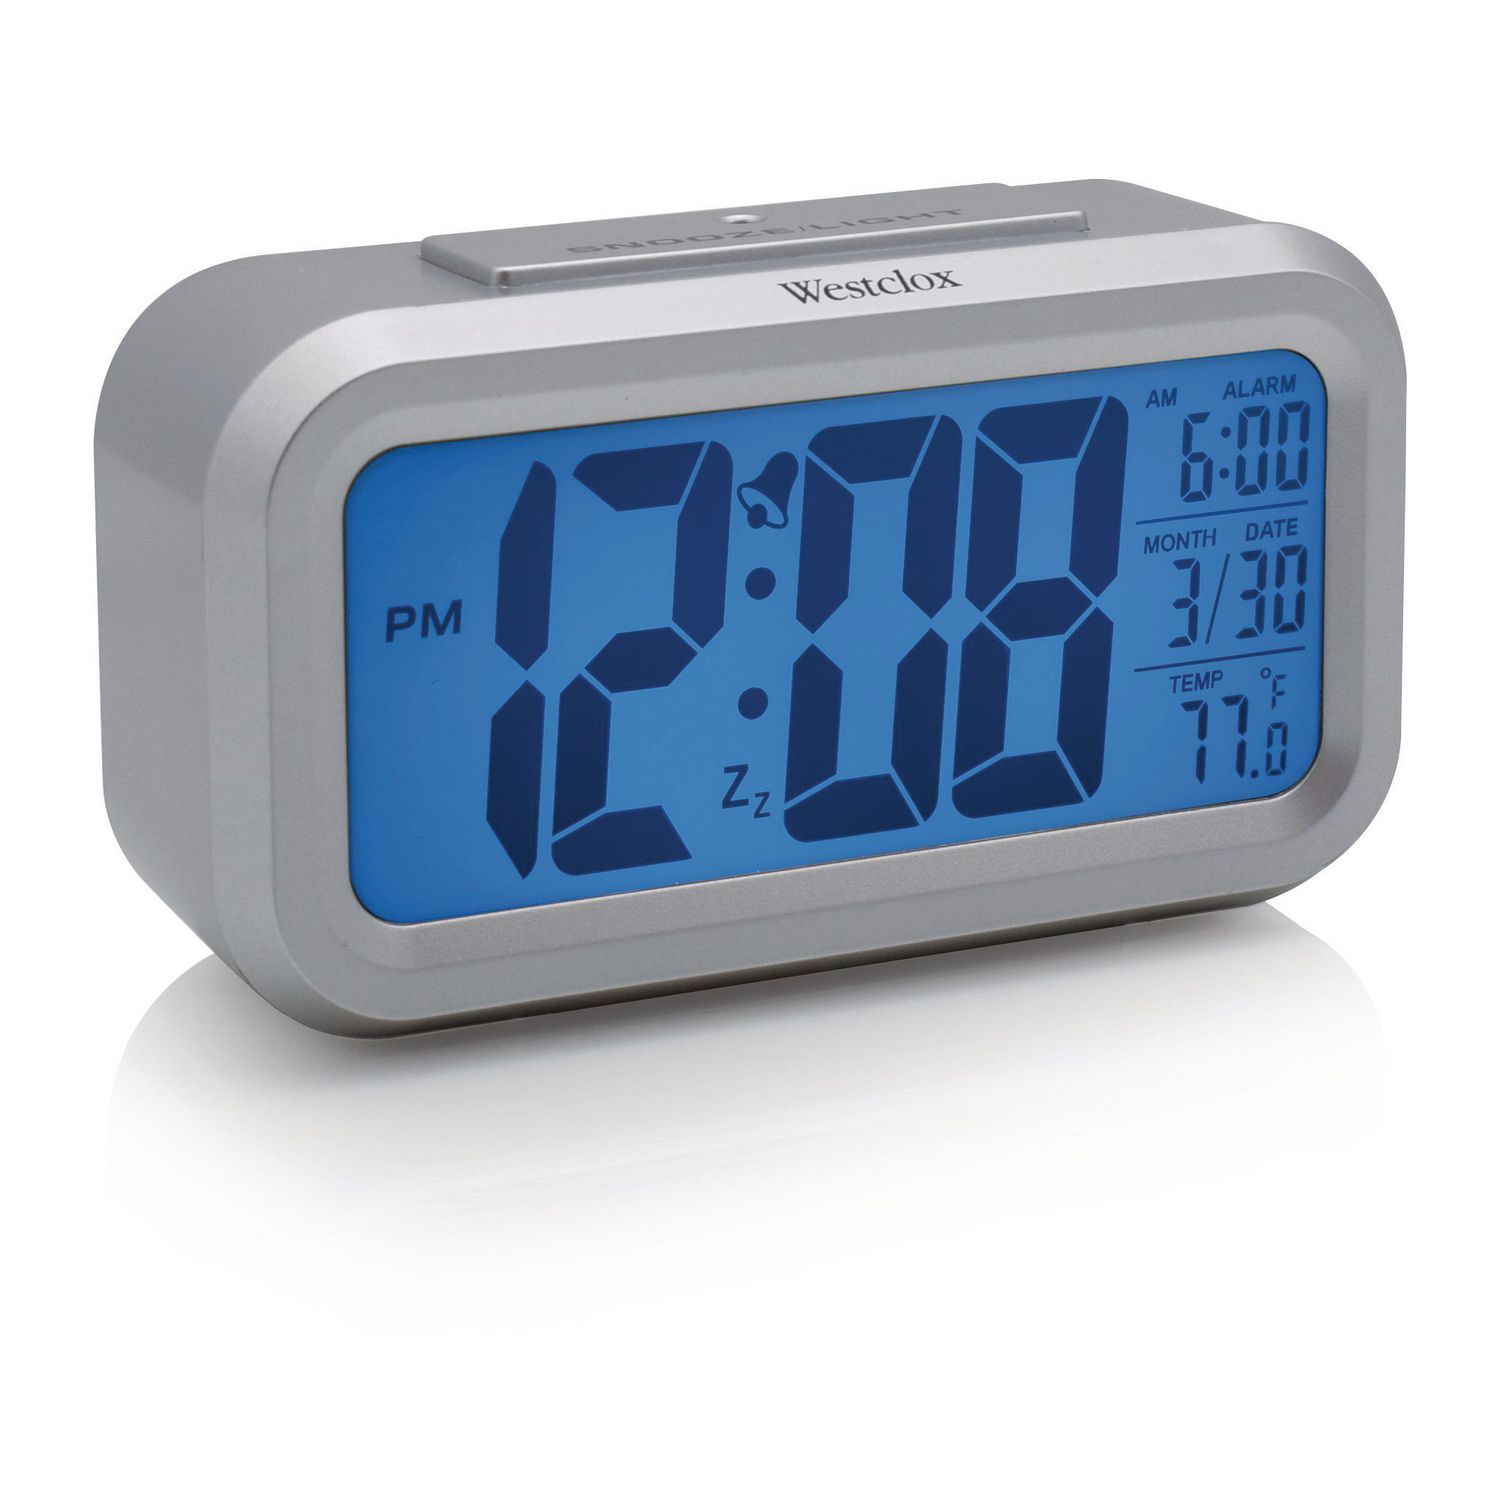 Westclox Alarm Clock Manual